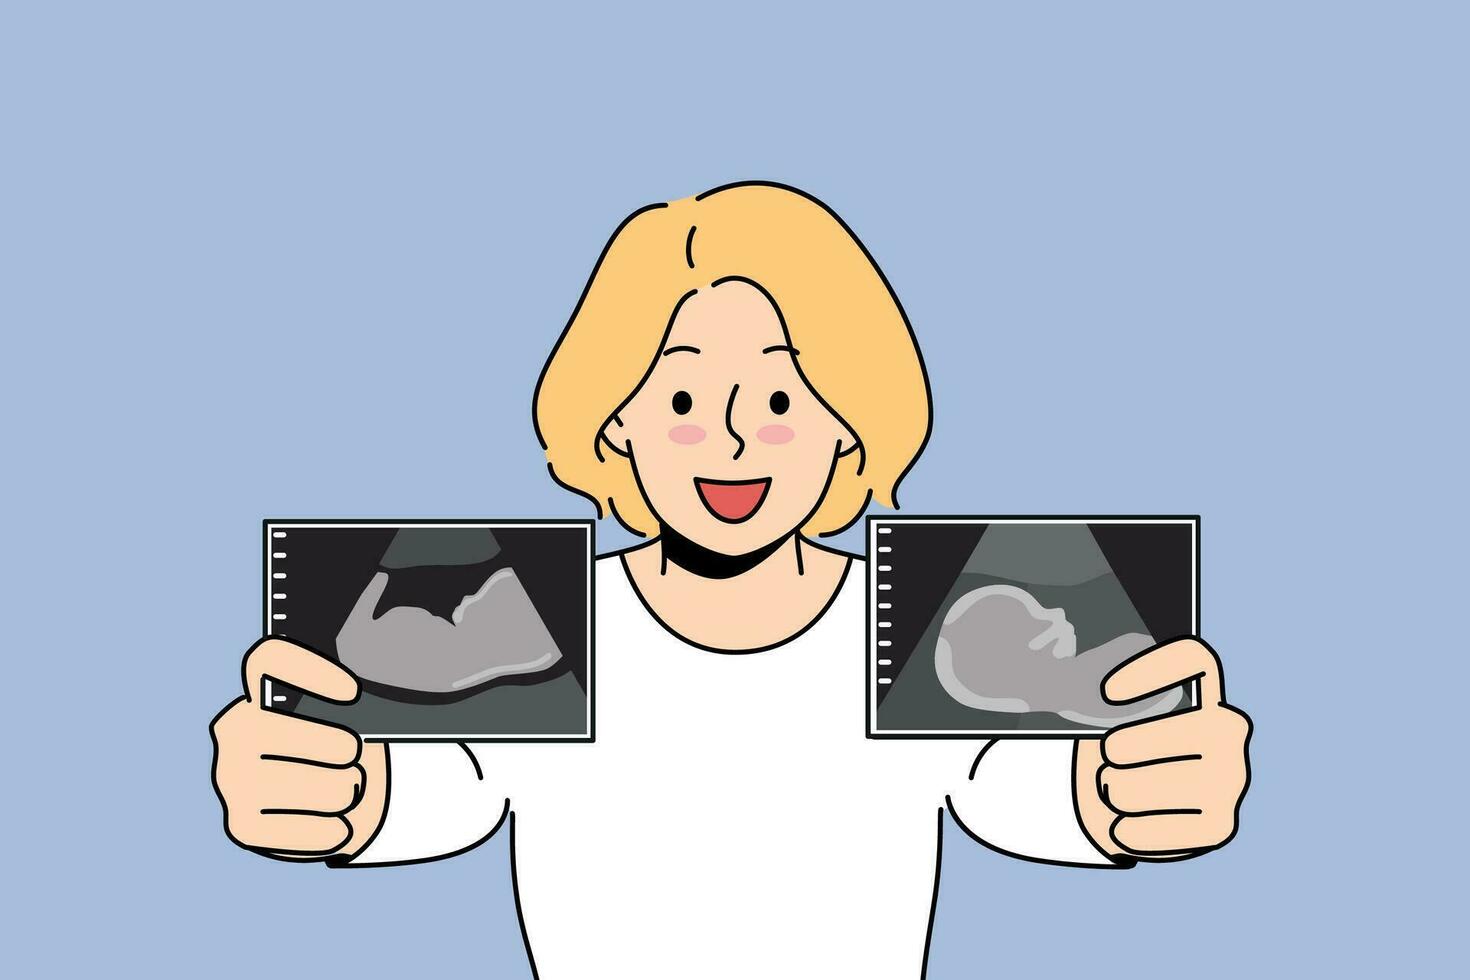 zwanger vrouw pronkt van echografie afbeeldingen van baby in baarmoeder van toekomst moeder in prenataal periode. zwanger blond meisje glimlacht en bereidt zich voor naar worden mam en geven geboorte naar gezond pasgeboren vector